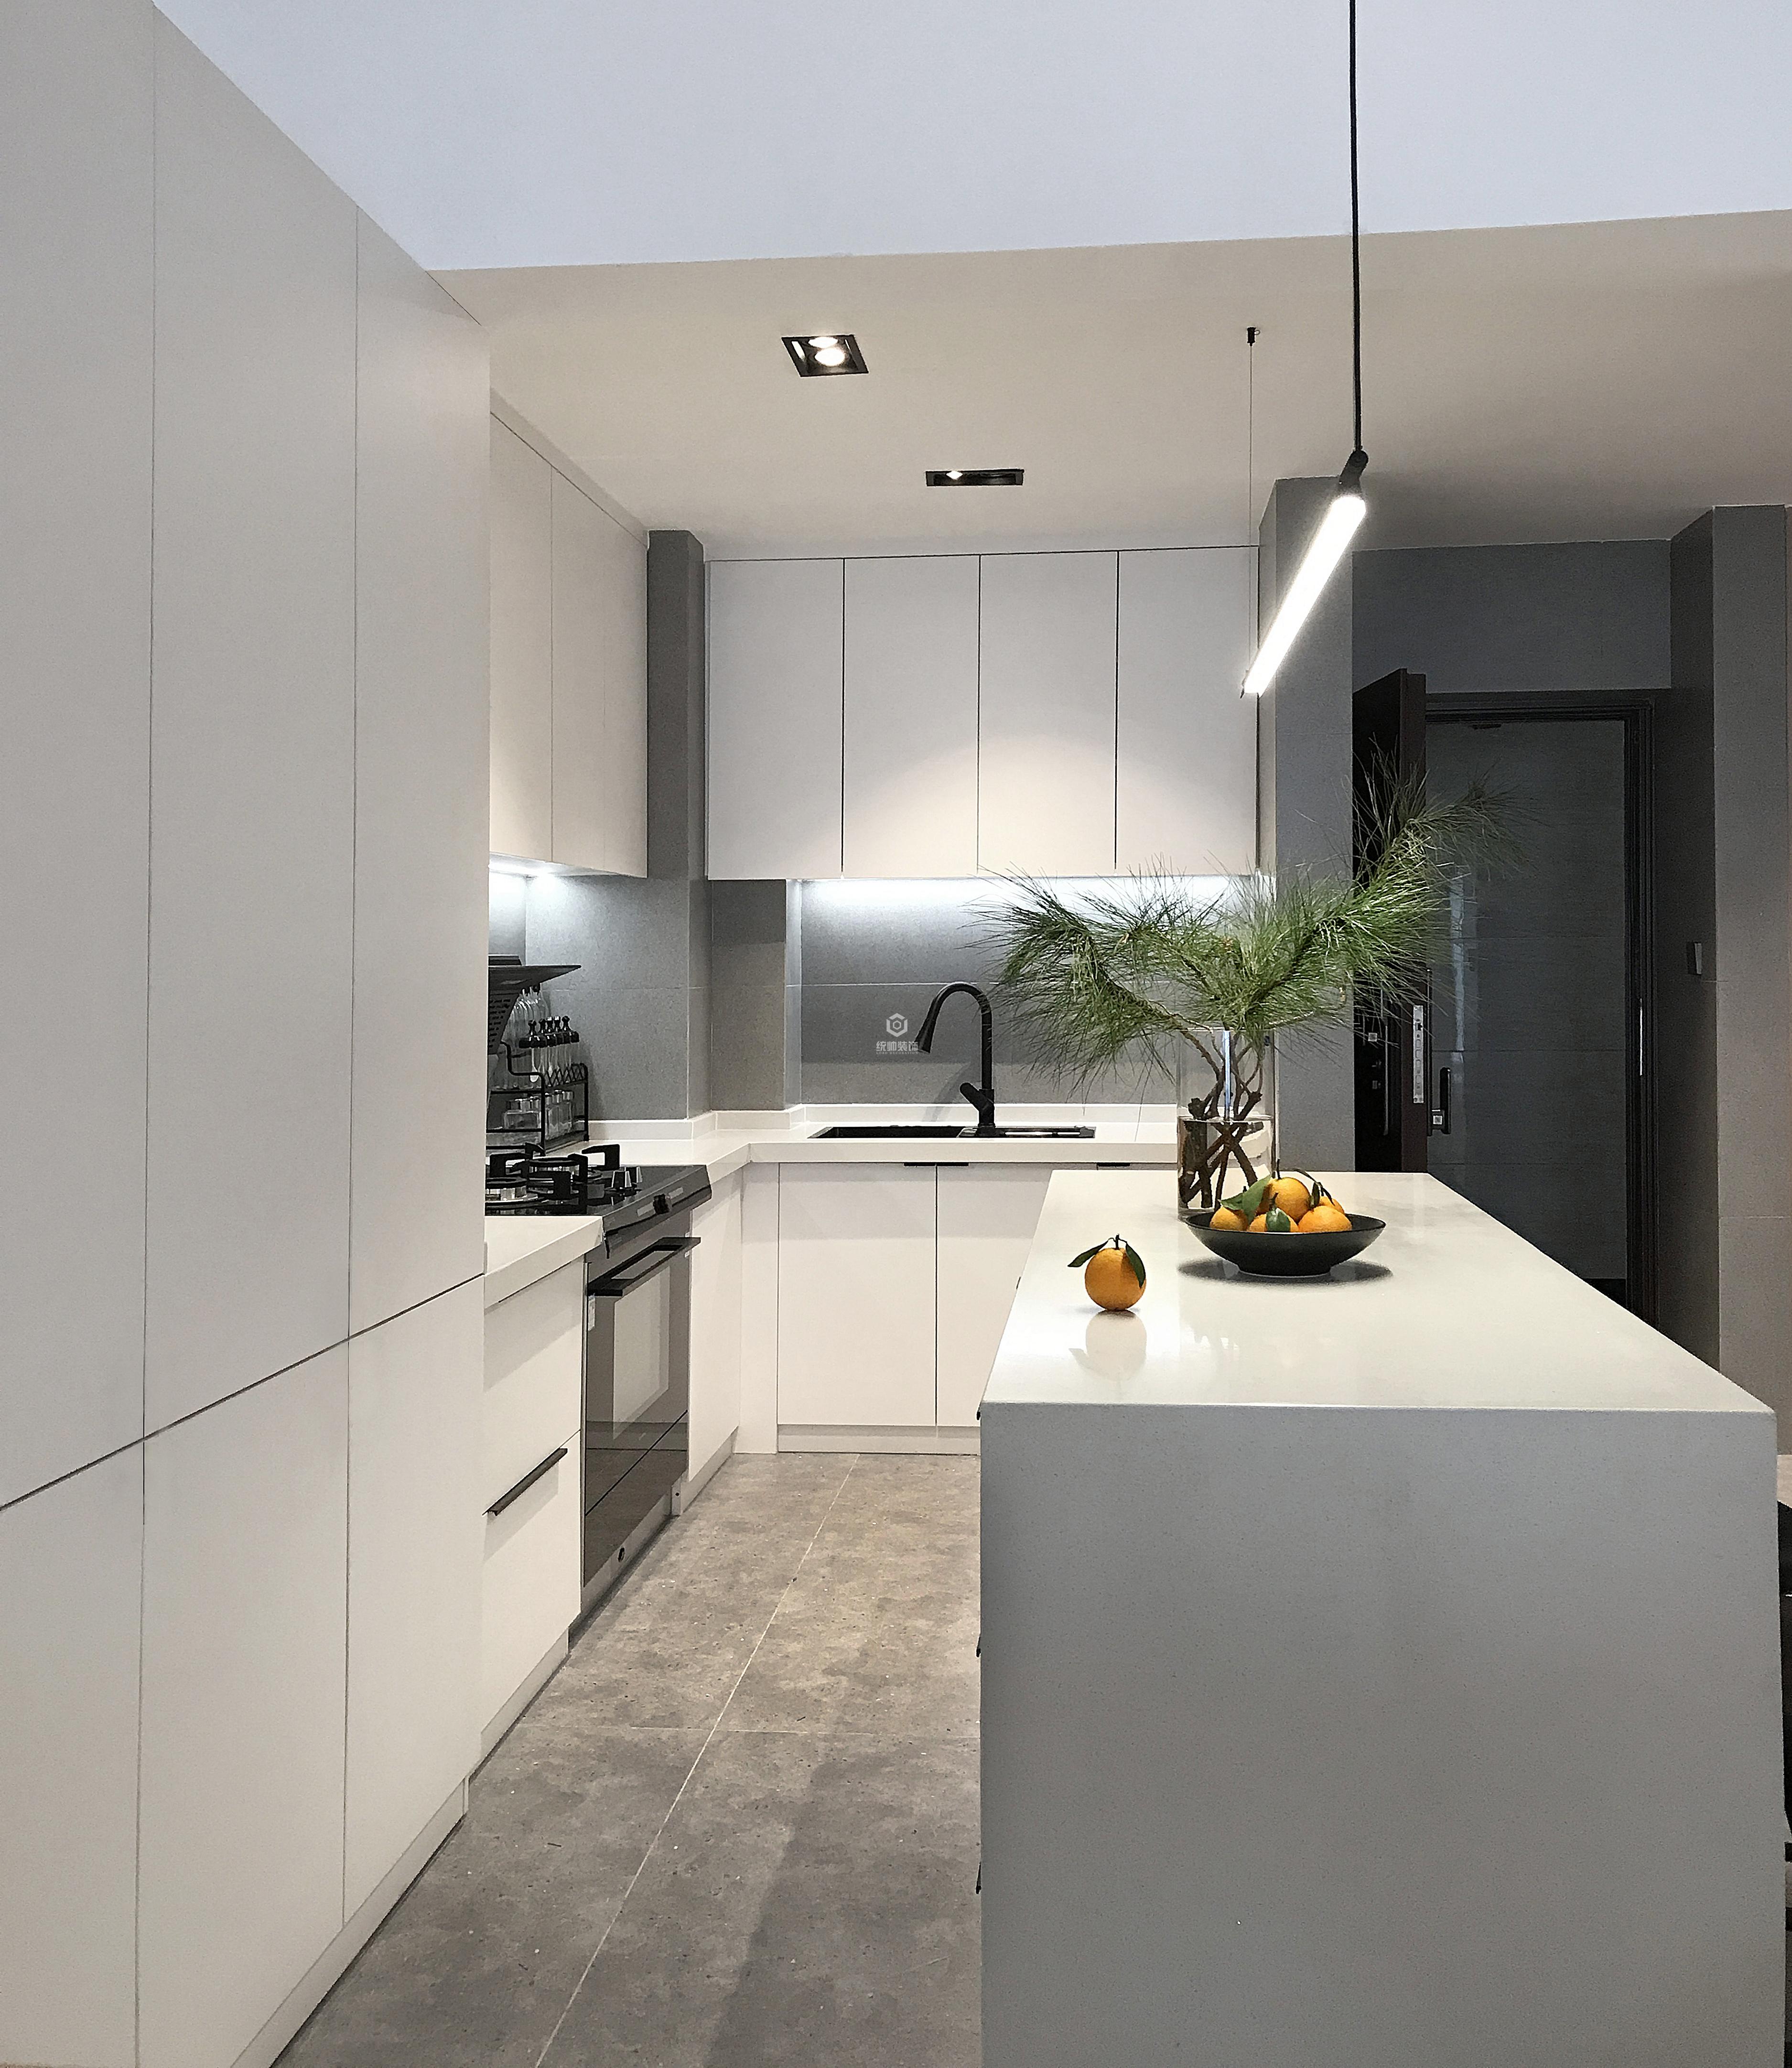 浦东新区经纬城市110平方现代简约风格3室2厅厨房装修效果图